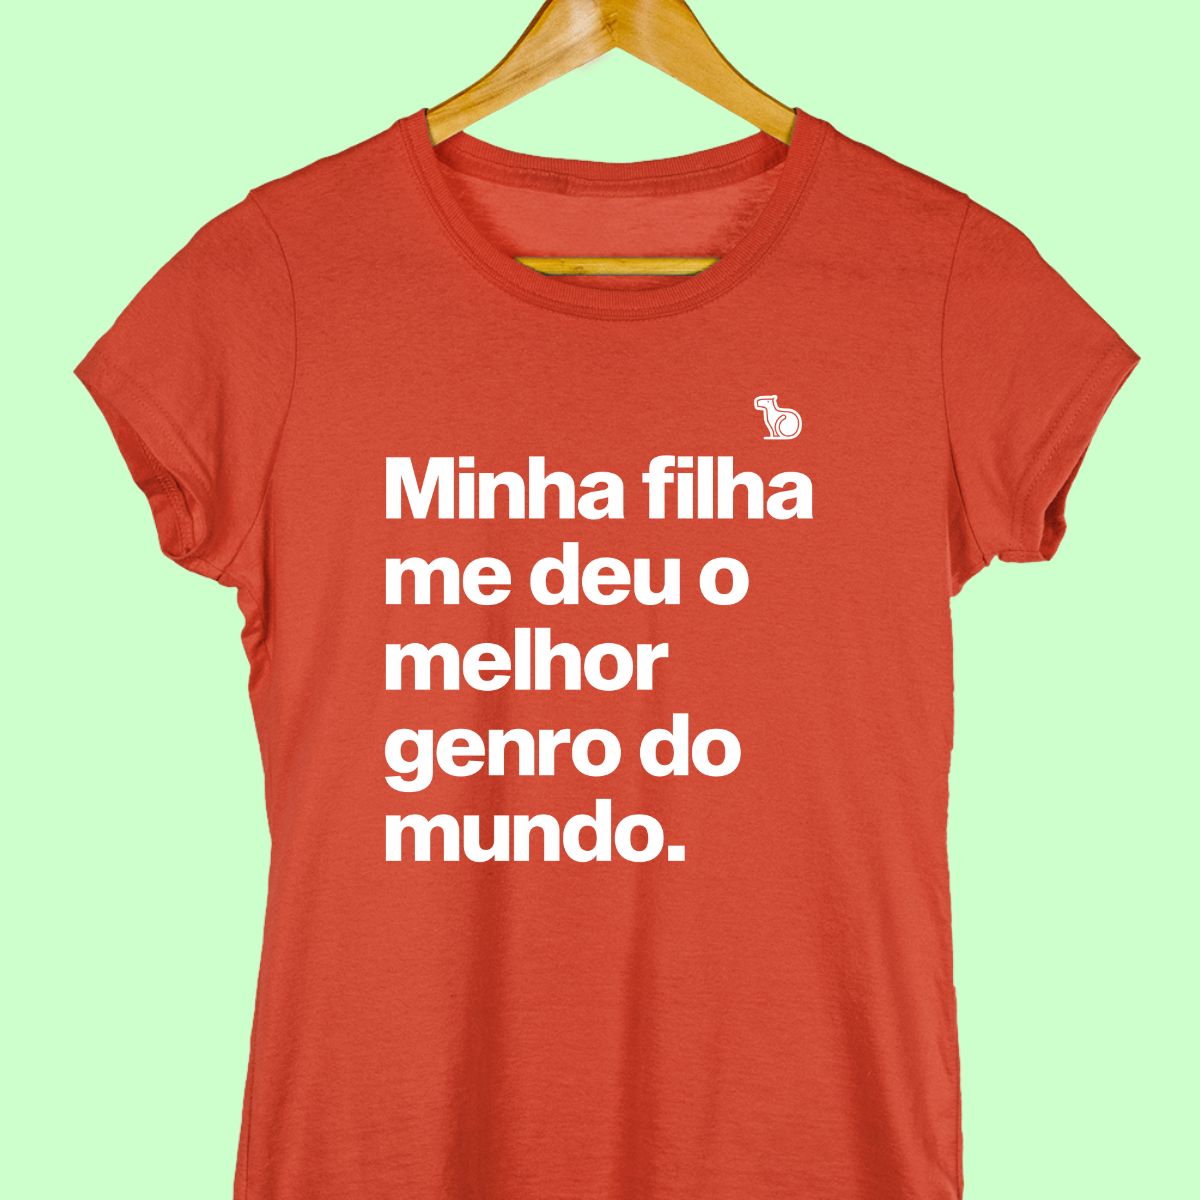 Imagem da Camiseta Feminina na cor vermelha com a frase "Minha filha me deu o melhor genro do mundo".